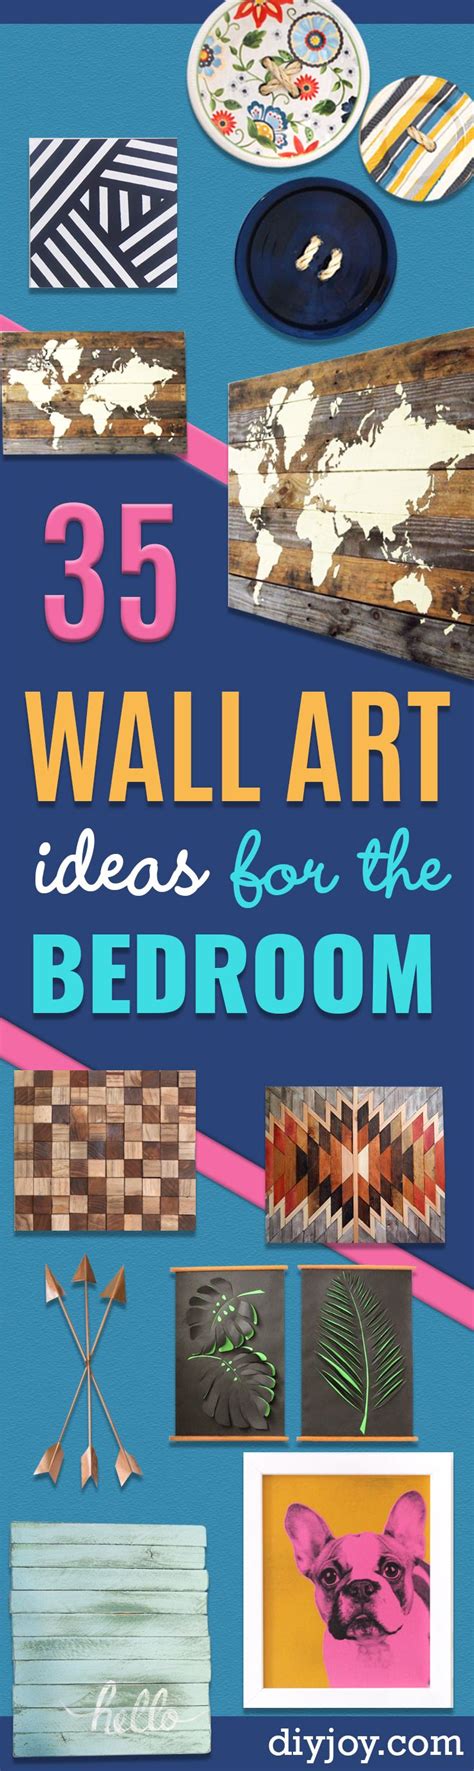 35 Diy Wall Art Ideas For The Bedroom Diy Wall Art Creative Wall Art